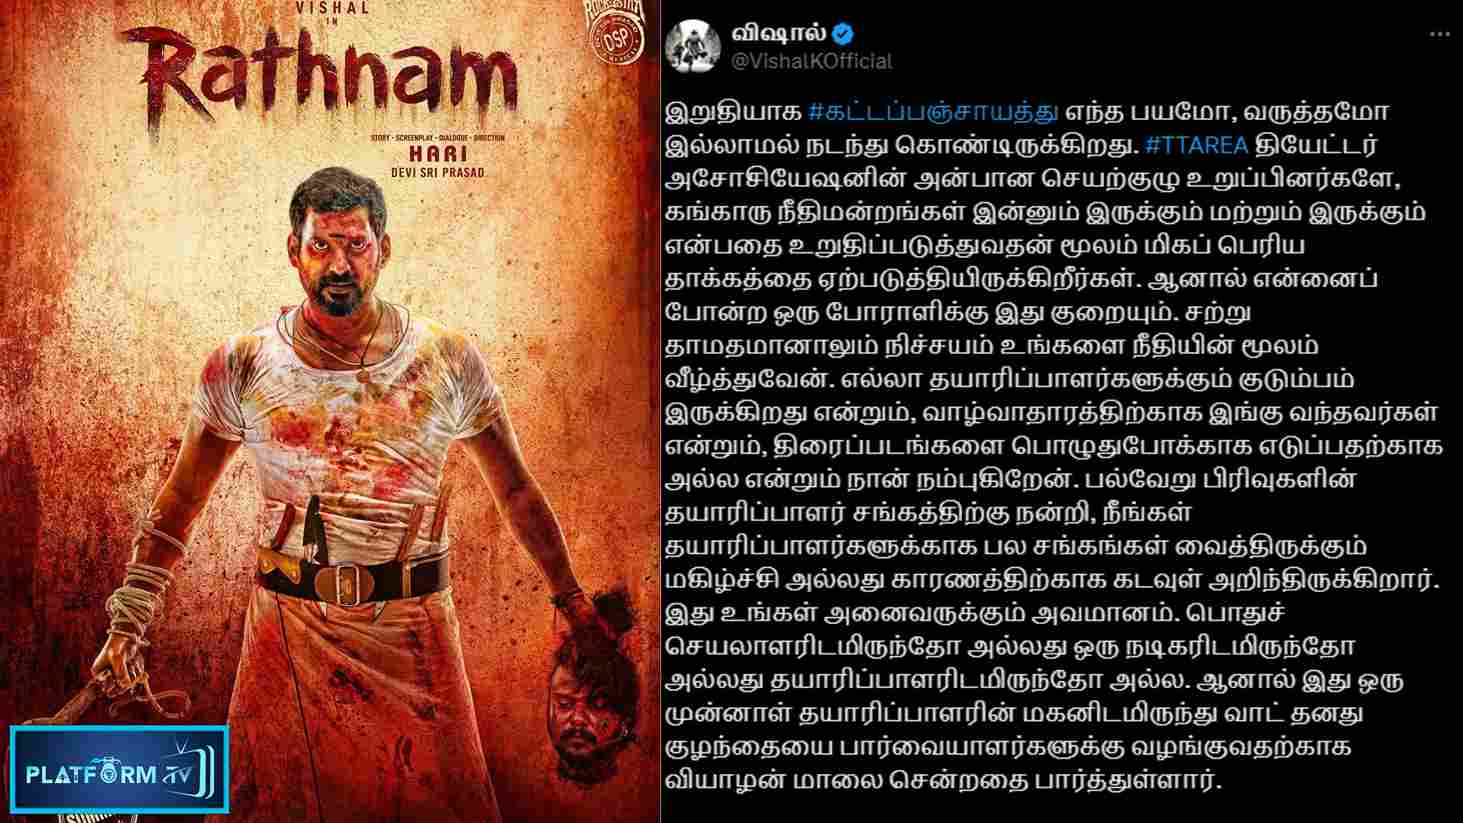 Rathnam Movie Vishal - Platform Tamil